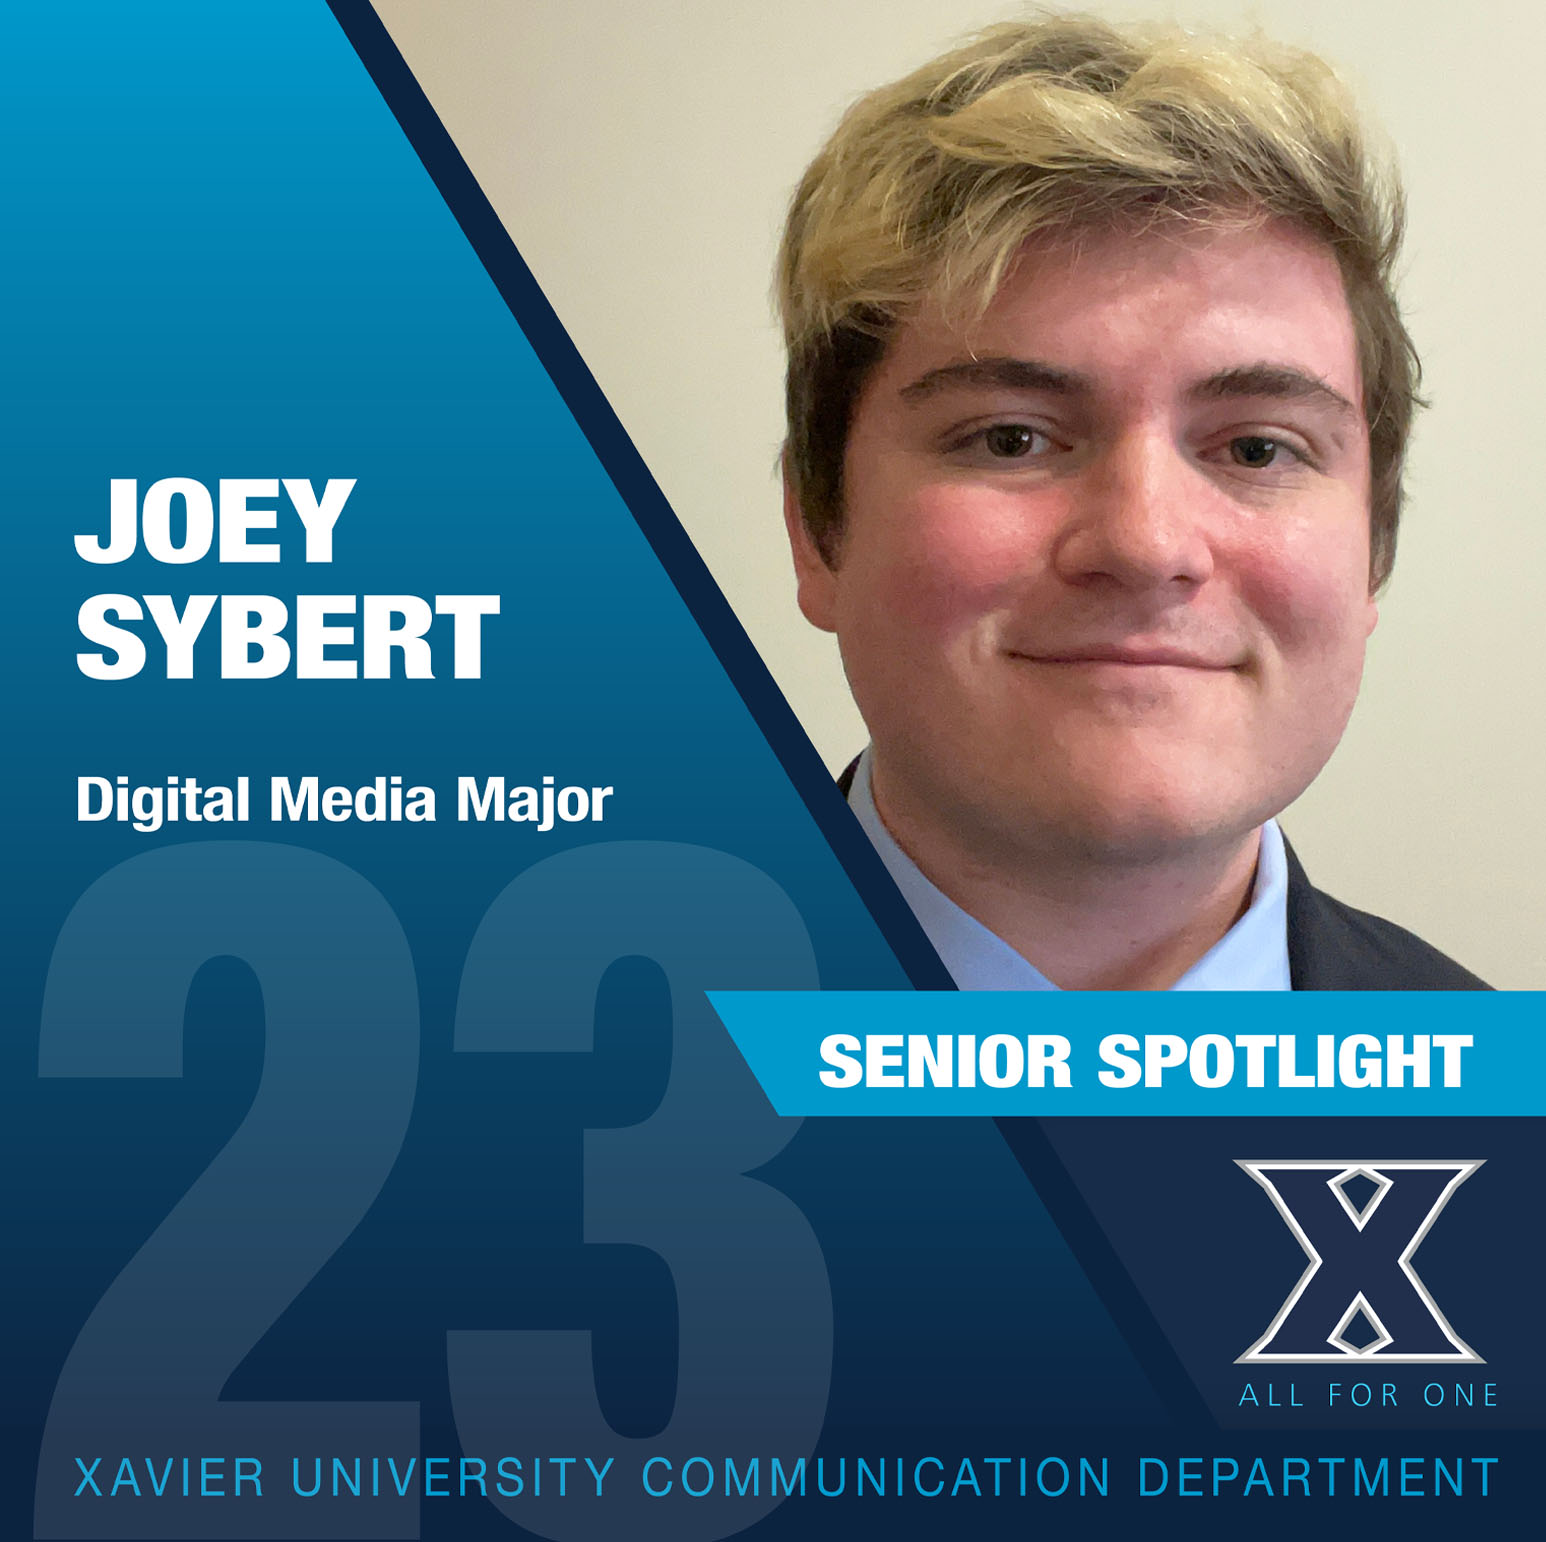 Joey Sybert, senior digital media major